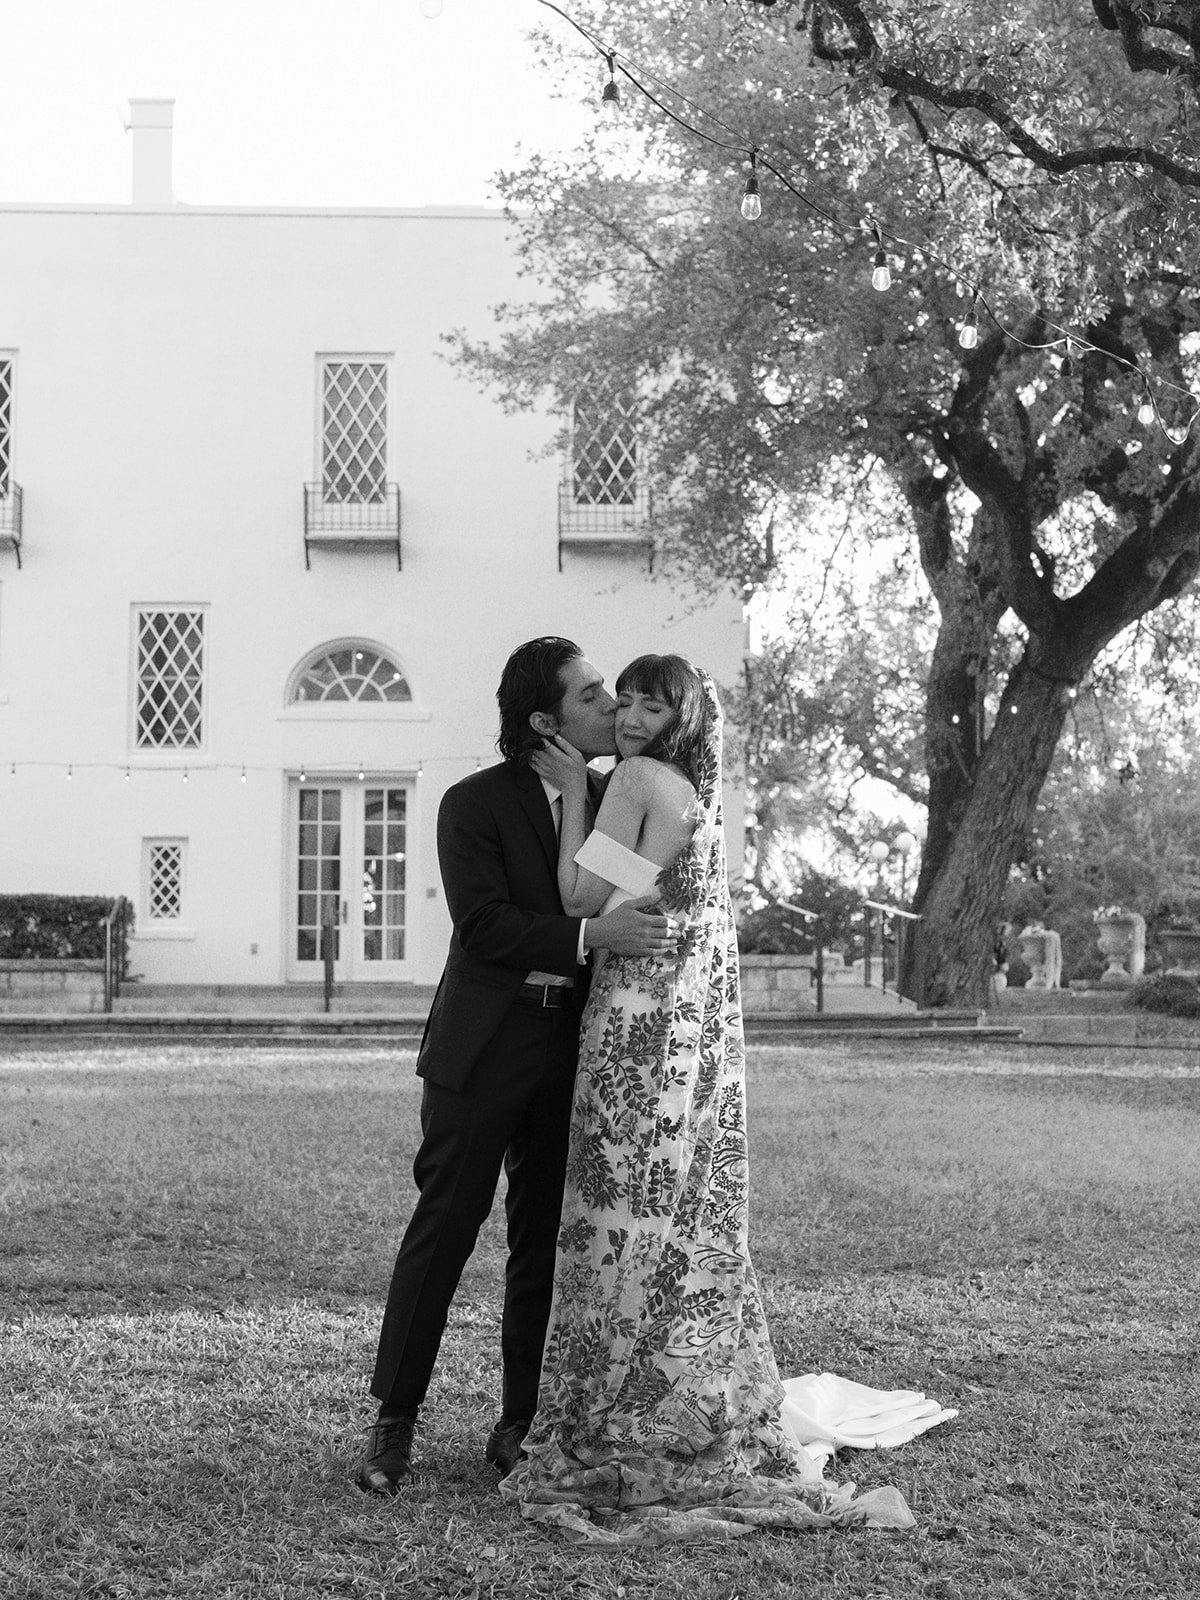 Best-Austin-Wedding-Photographers-Elopement-Film-35mm-Asheville-Santa-Barbara-Laguna-Gloria-50.jpg